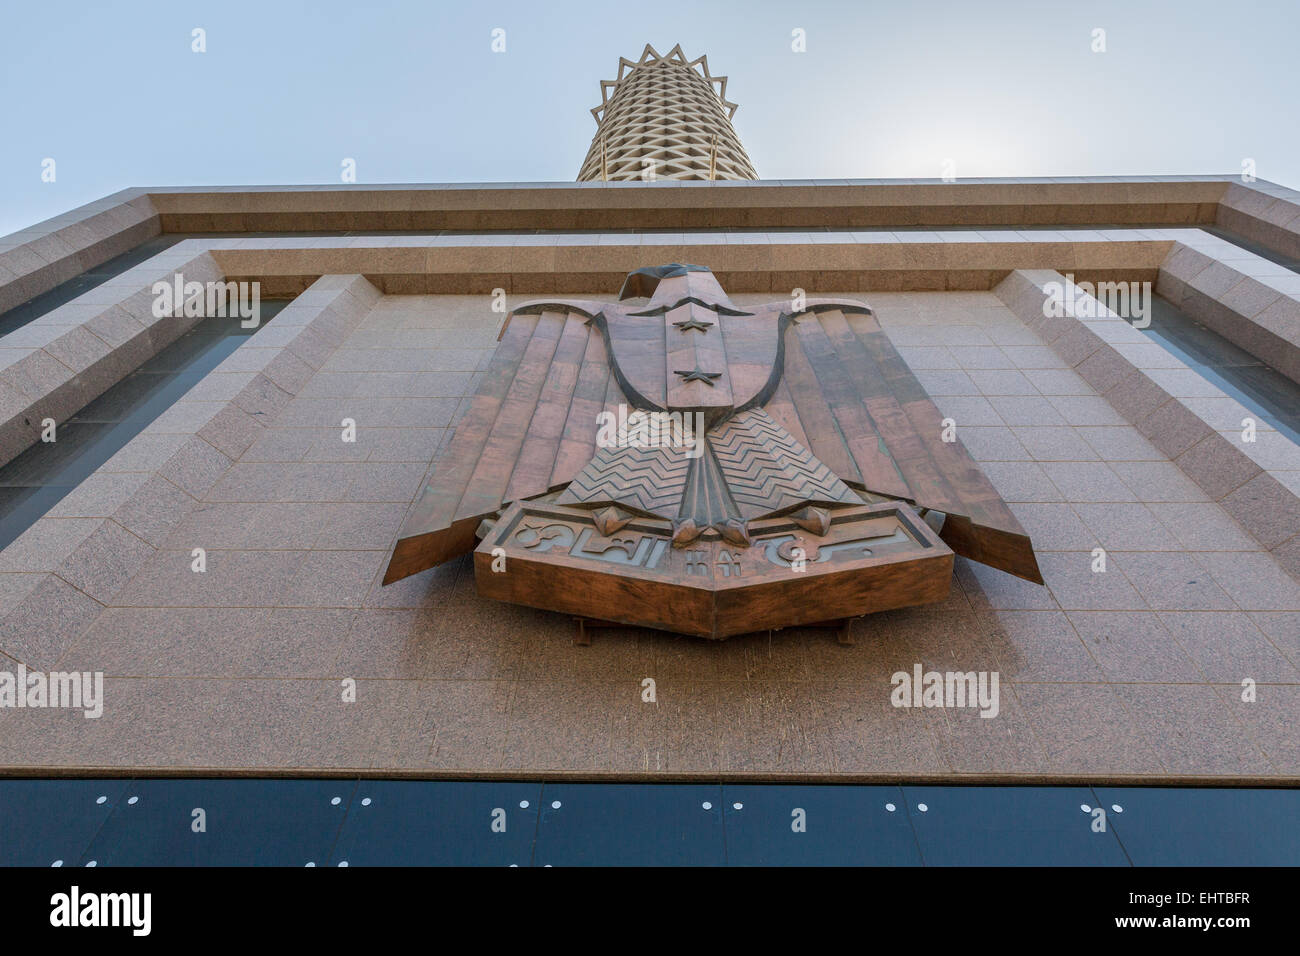 Cairo Tower Stock Photo